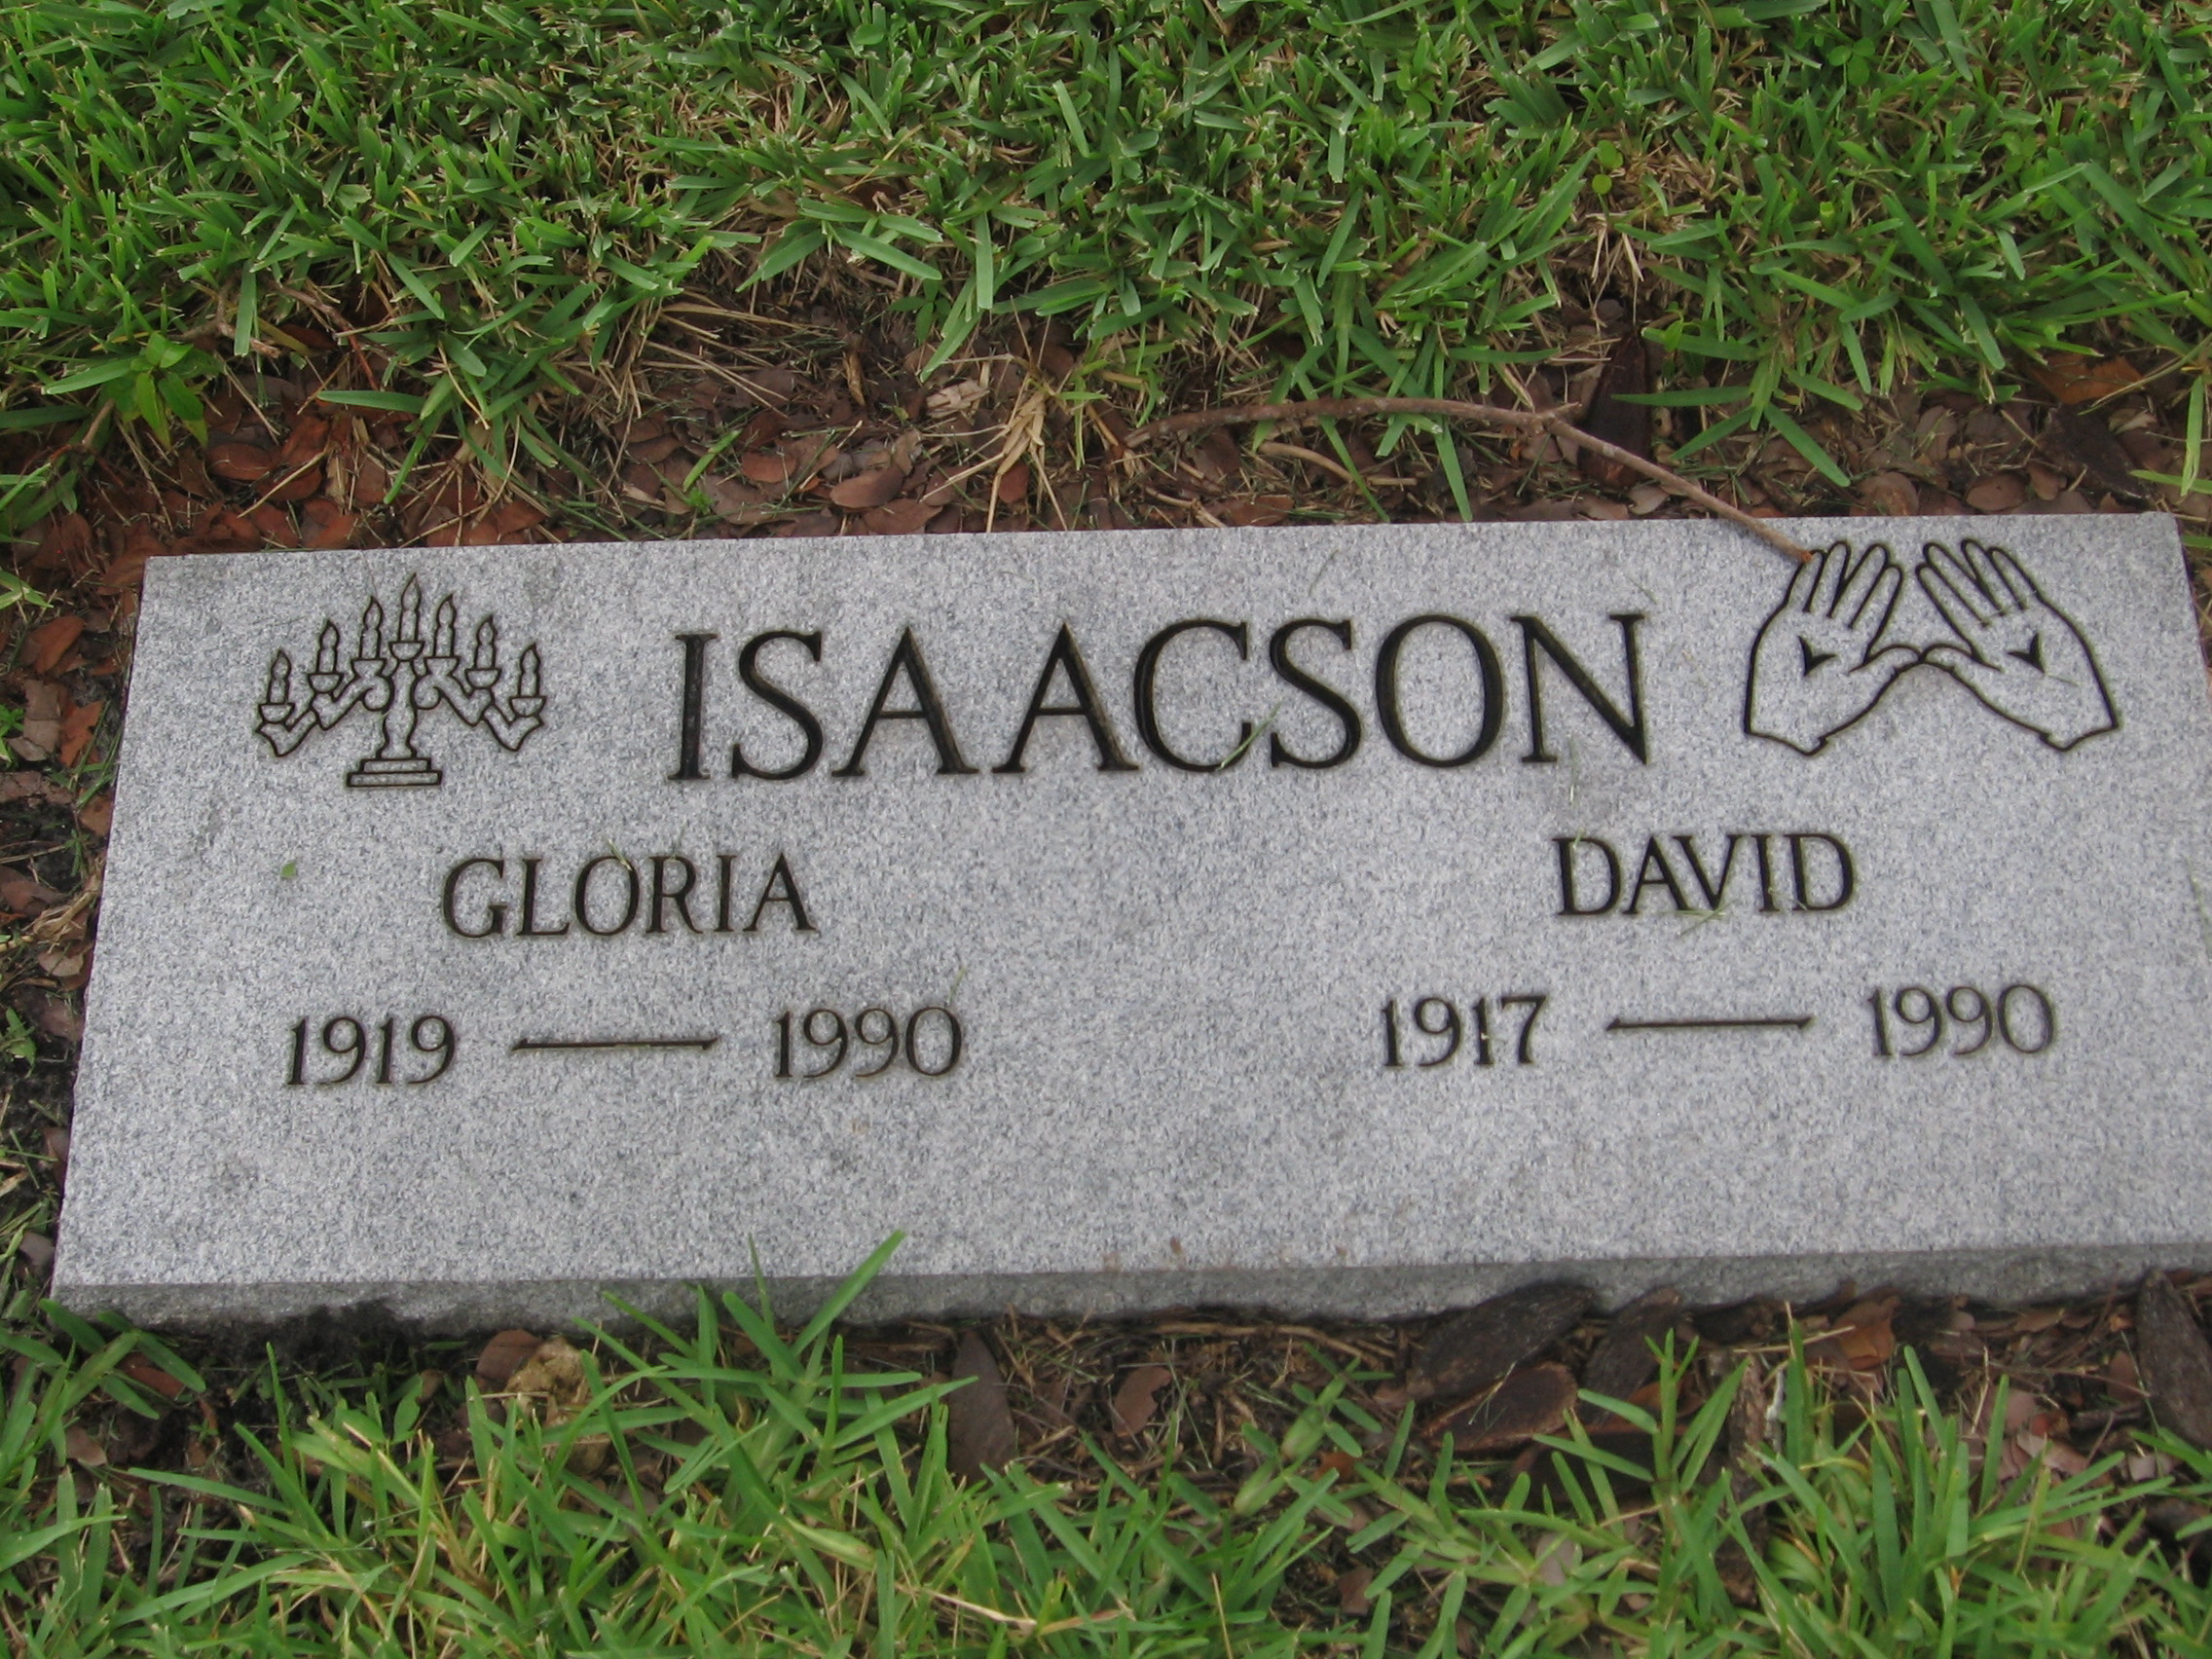 David Isaacson